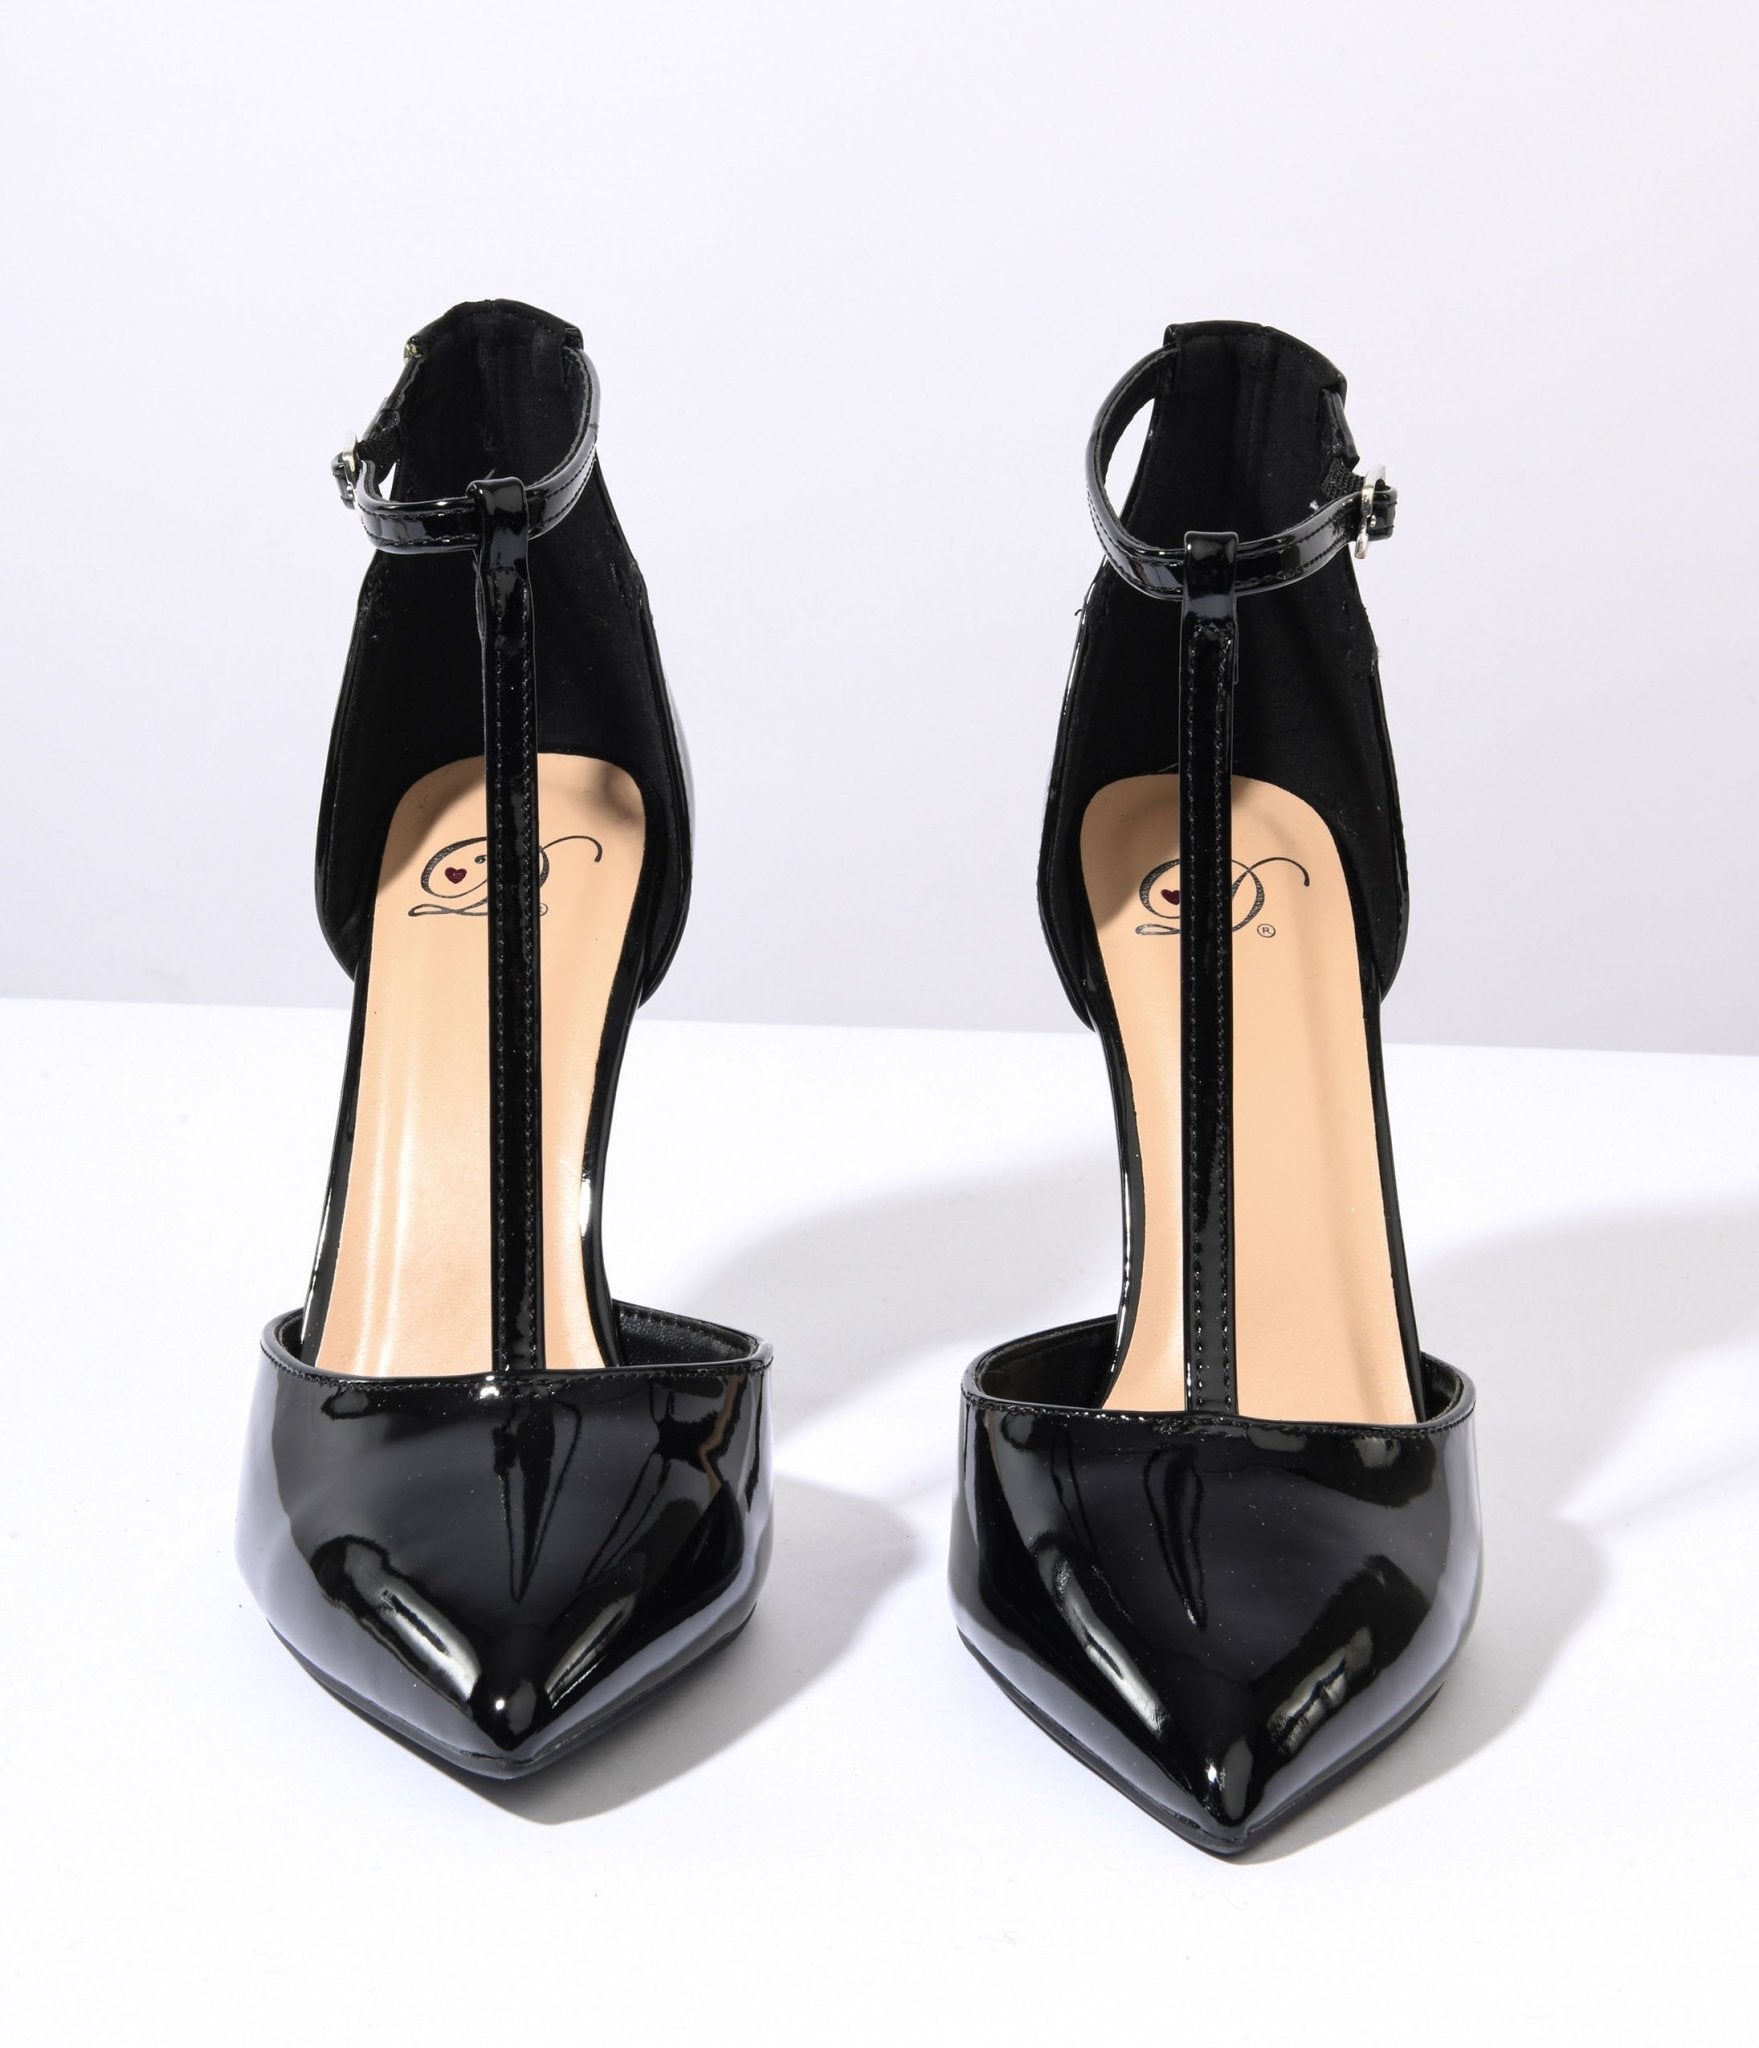 Petit Cadeau Women's Patent High Heel Shoes Stiletto Pumps Shoes Black Size  6 | eBay